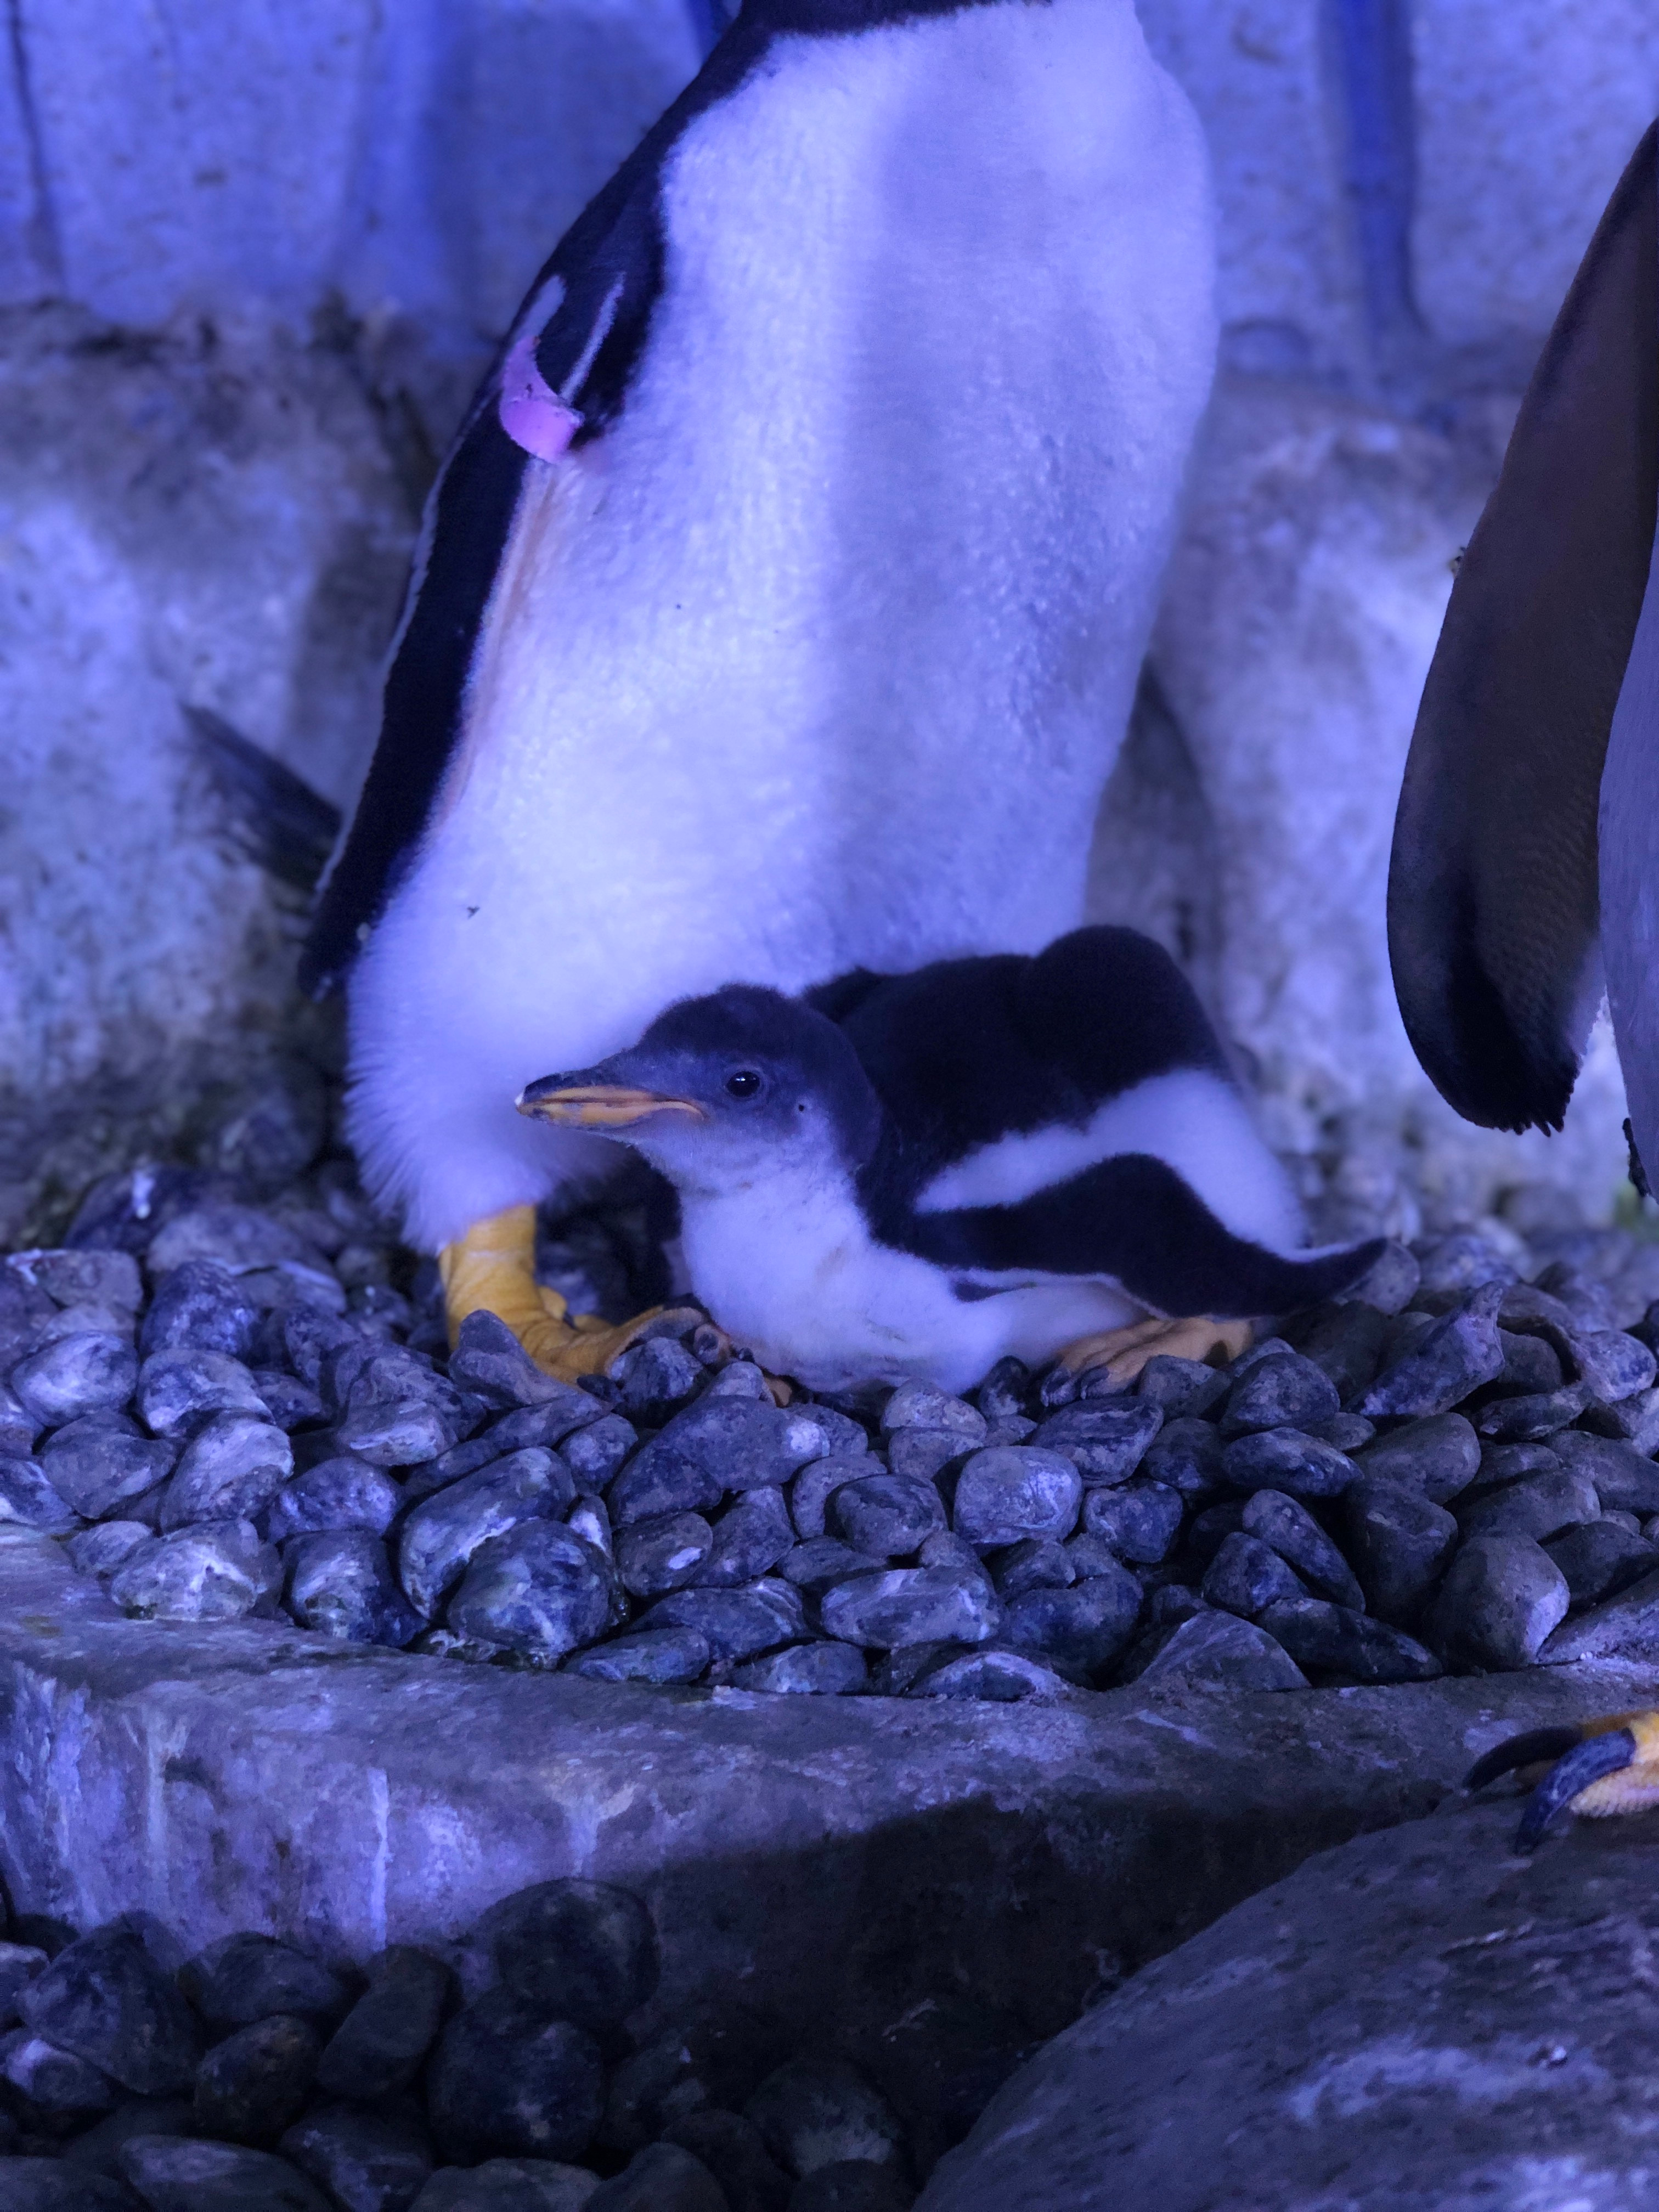 Ebeveynleri tarafından günde 7-10 kez beslenen bebek penguen şimdiden ziyaretçilerin de ilgi odağı oldu. 